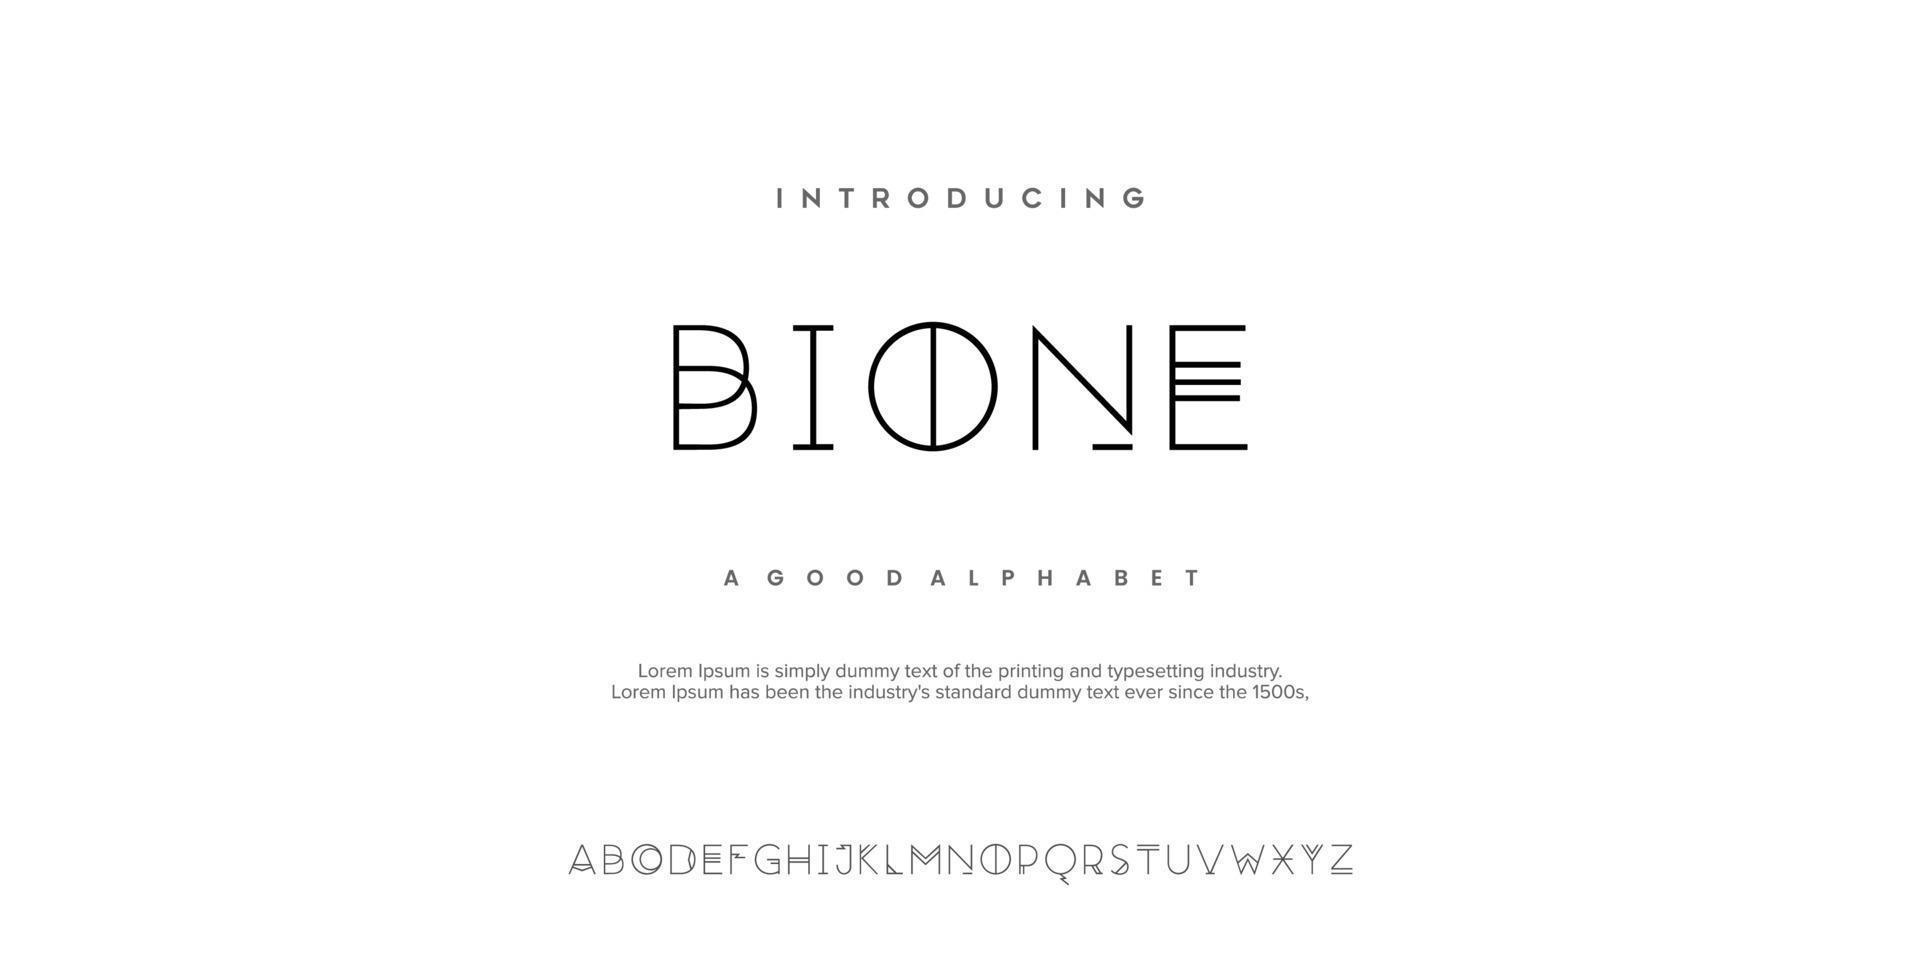 fontes do alfabeto moderno mínimo abstrato bione. ilustração em vetor tecnologia tipografia